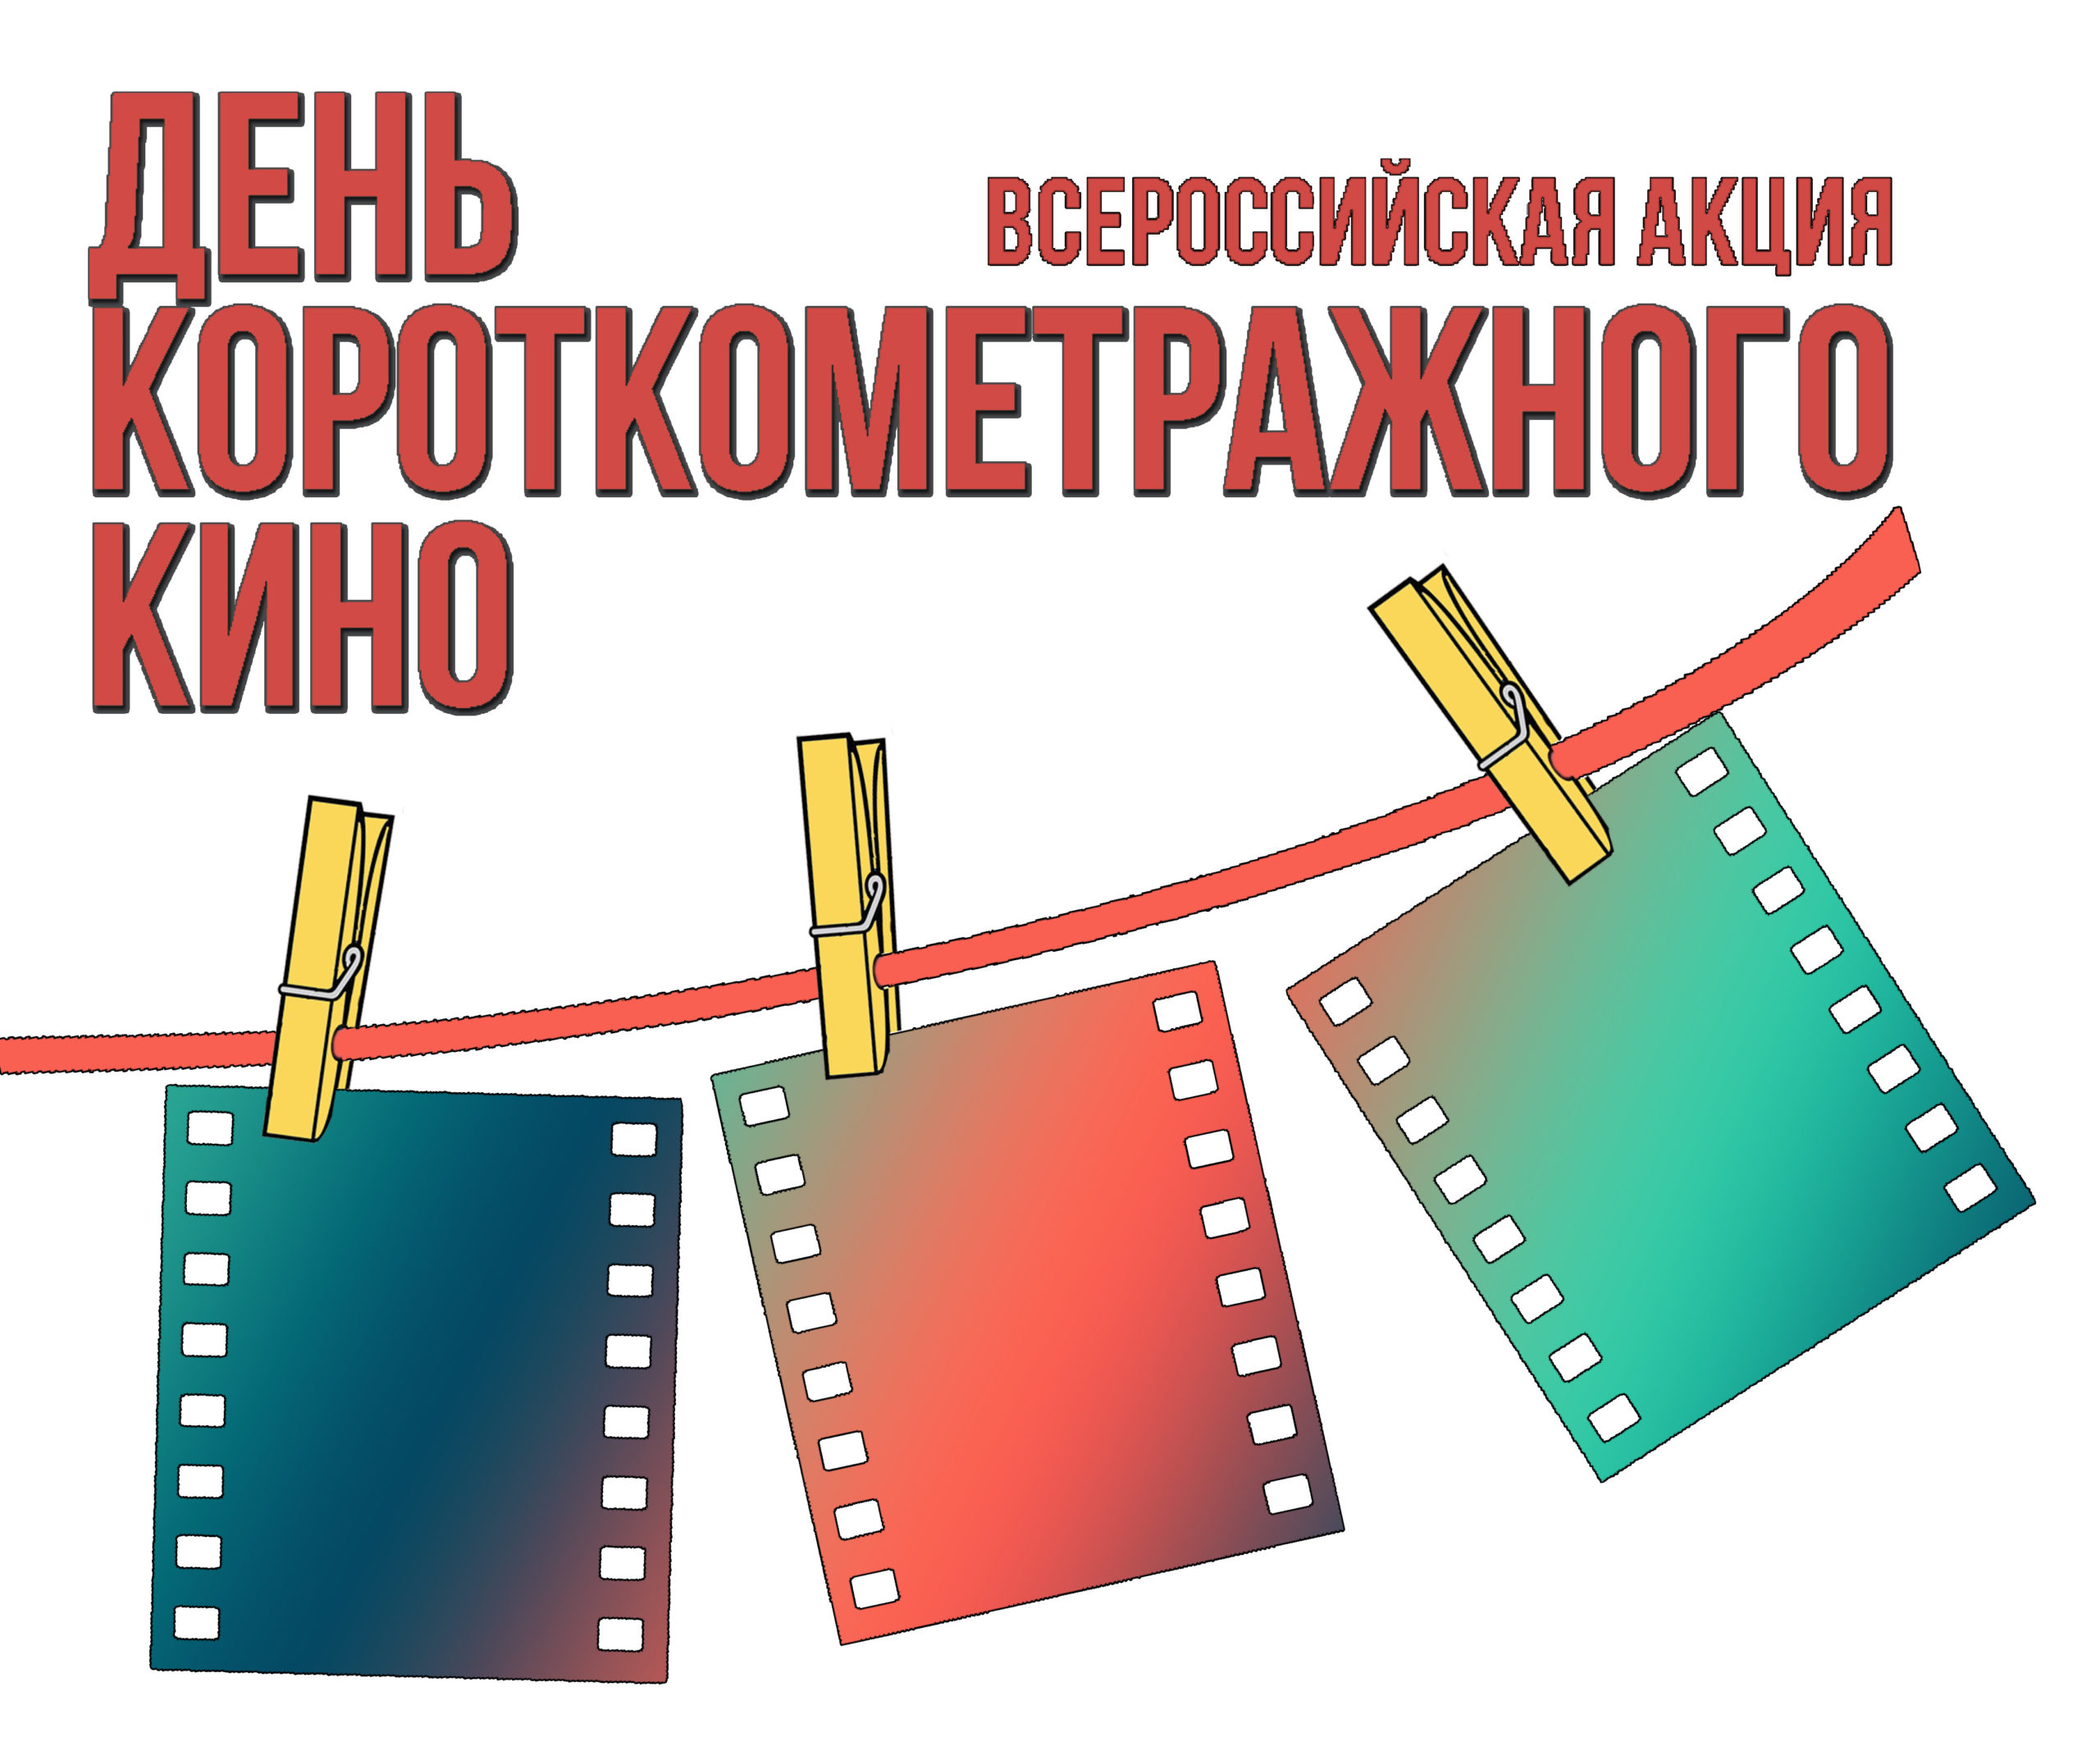 НФПП – партнер акции «День короткометражного кино»